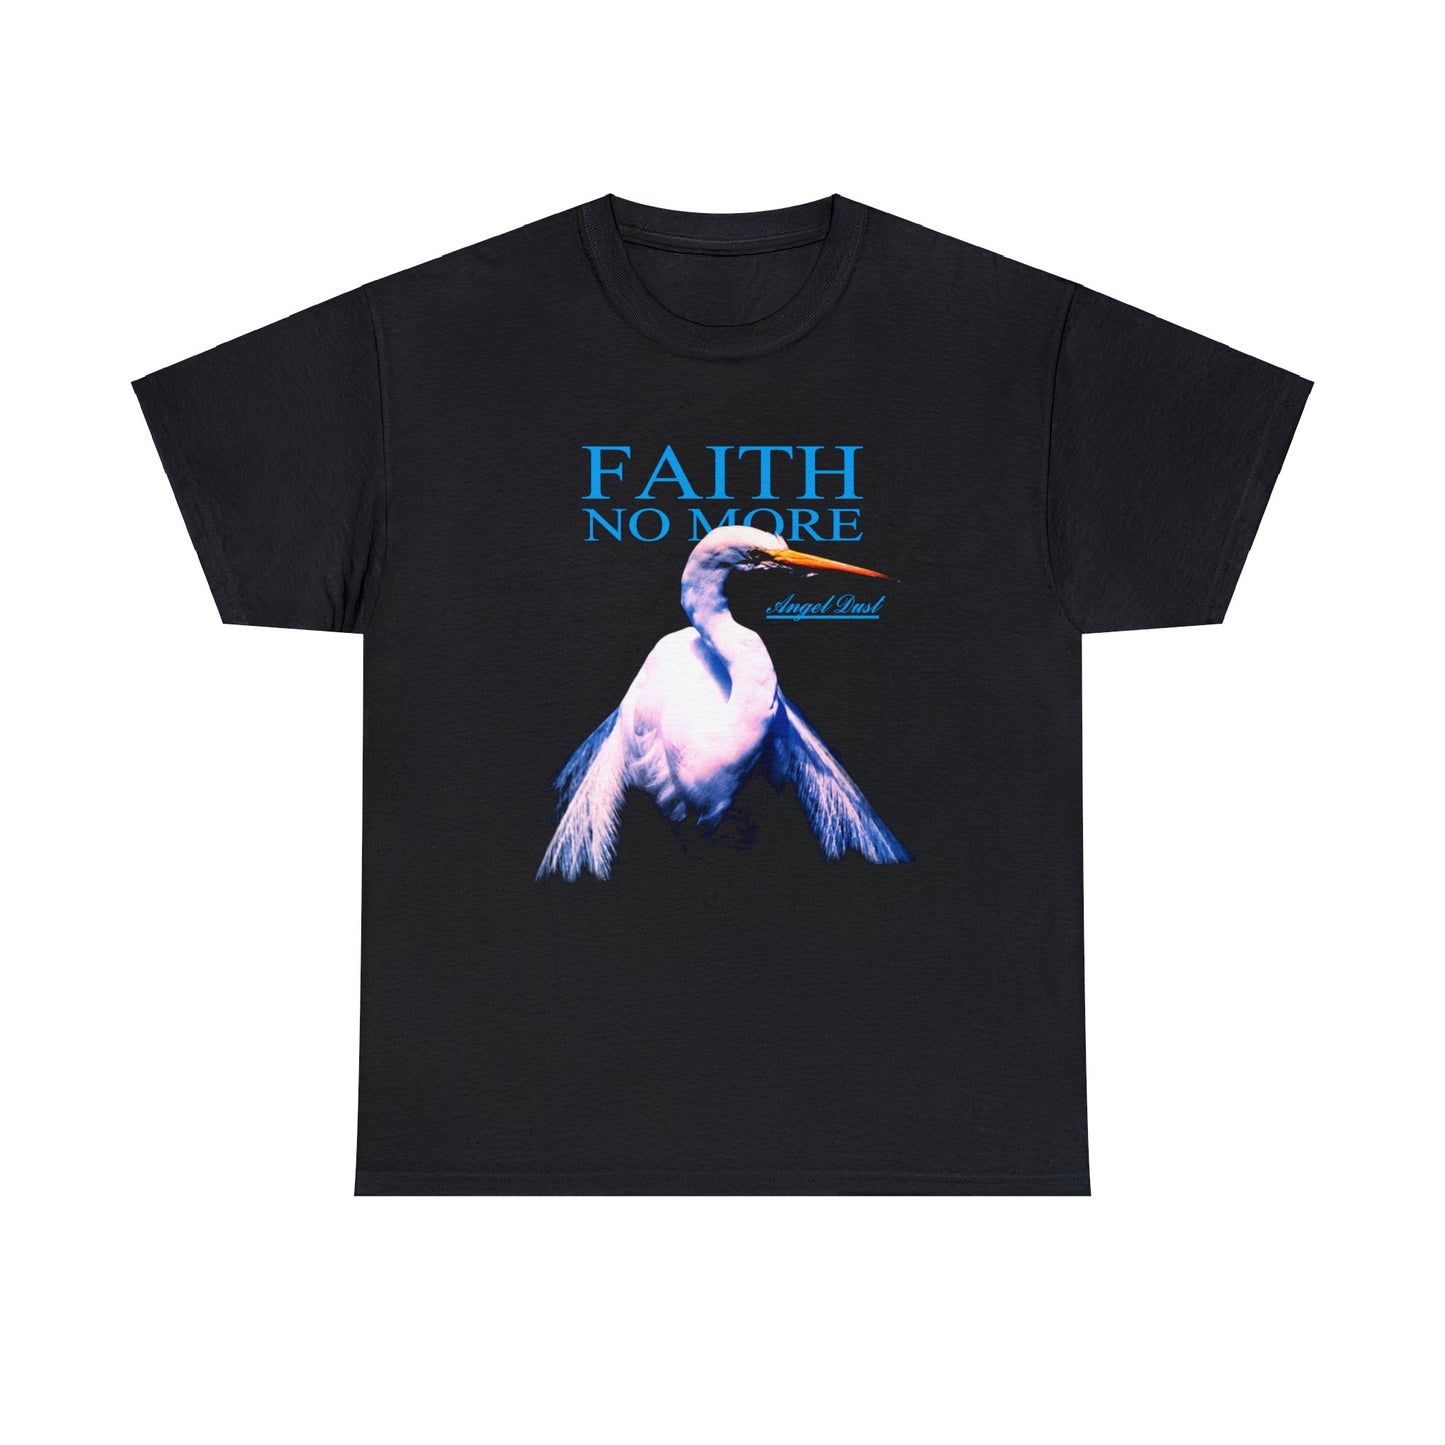 FAITH NO MORE Angel Dust Tour 1992 T-shirt for Sale